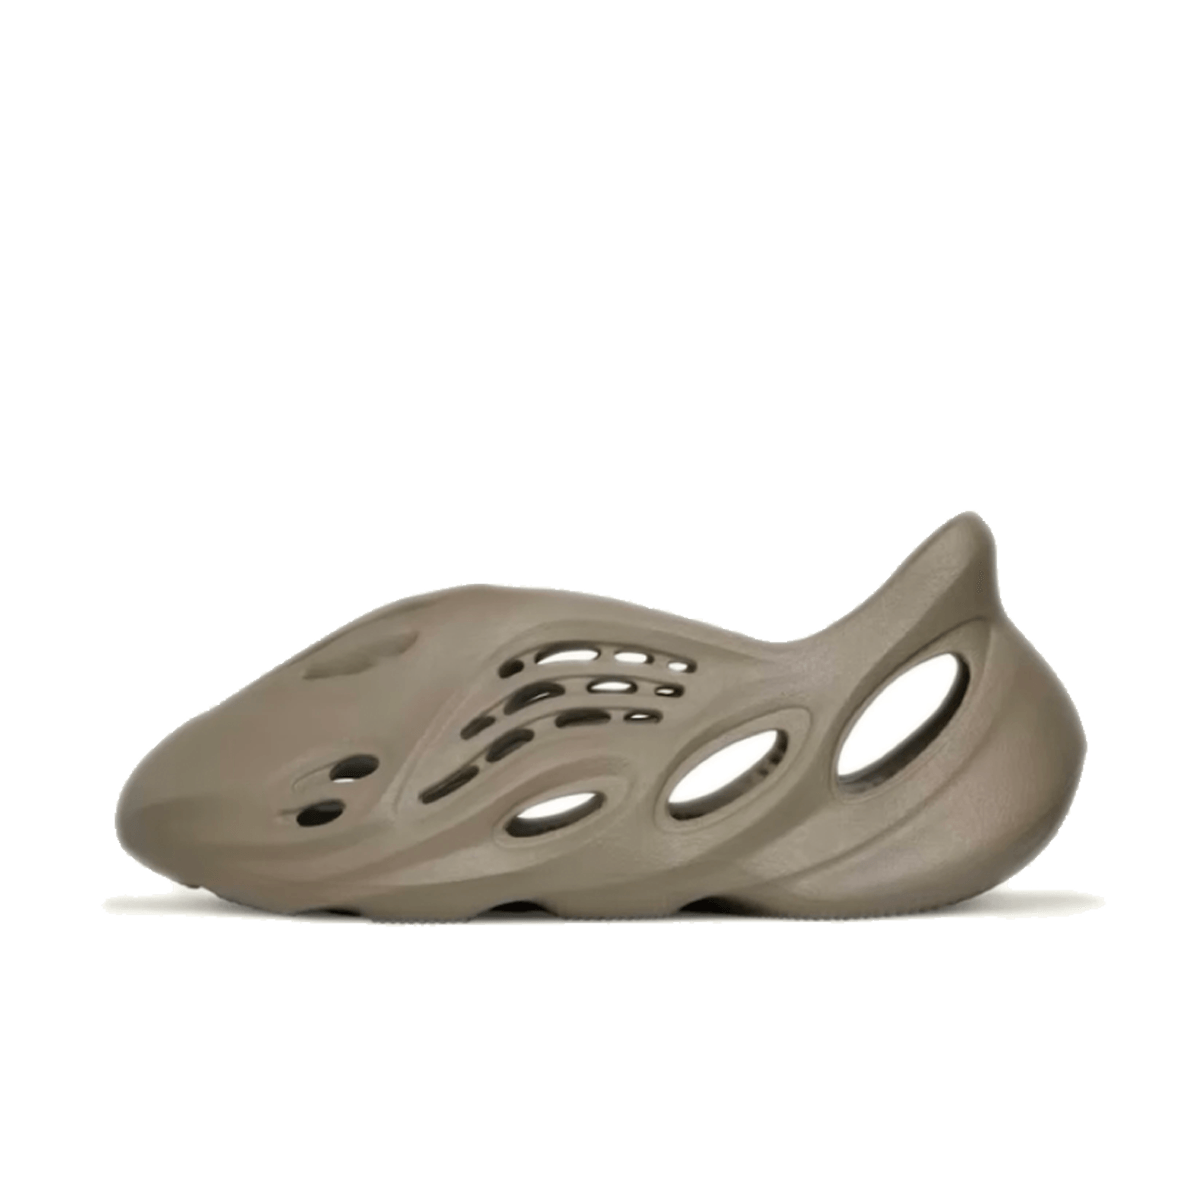 adidas Yeezy Foam Runner 'Stone Taupe'